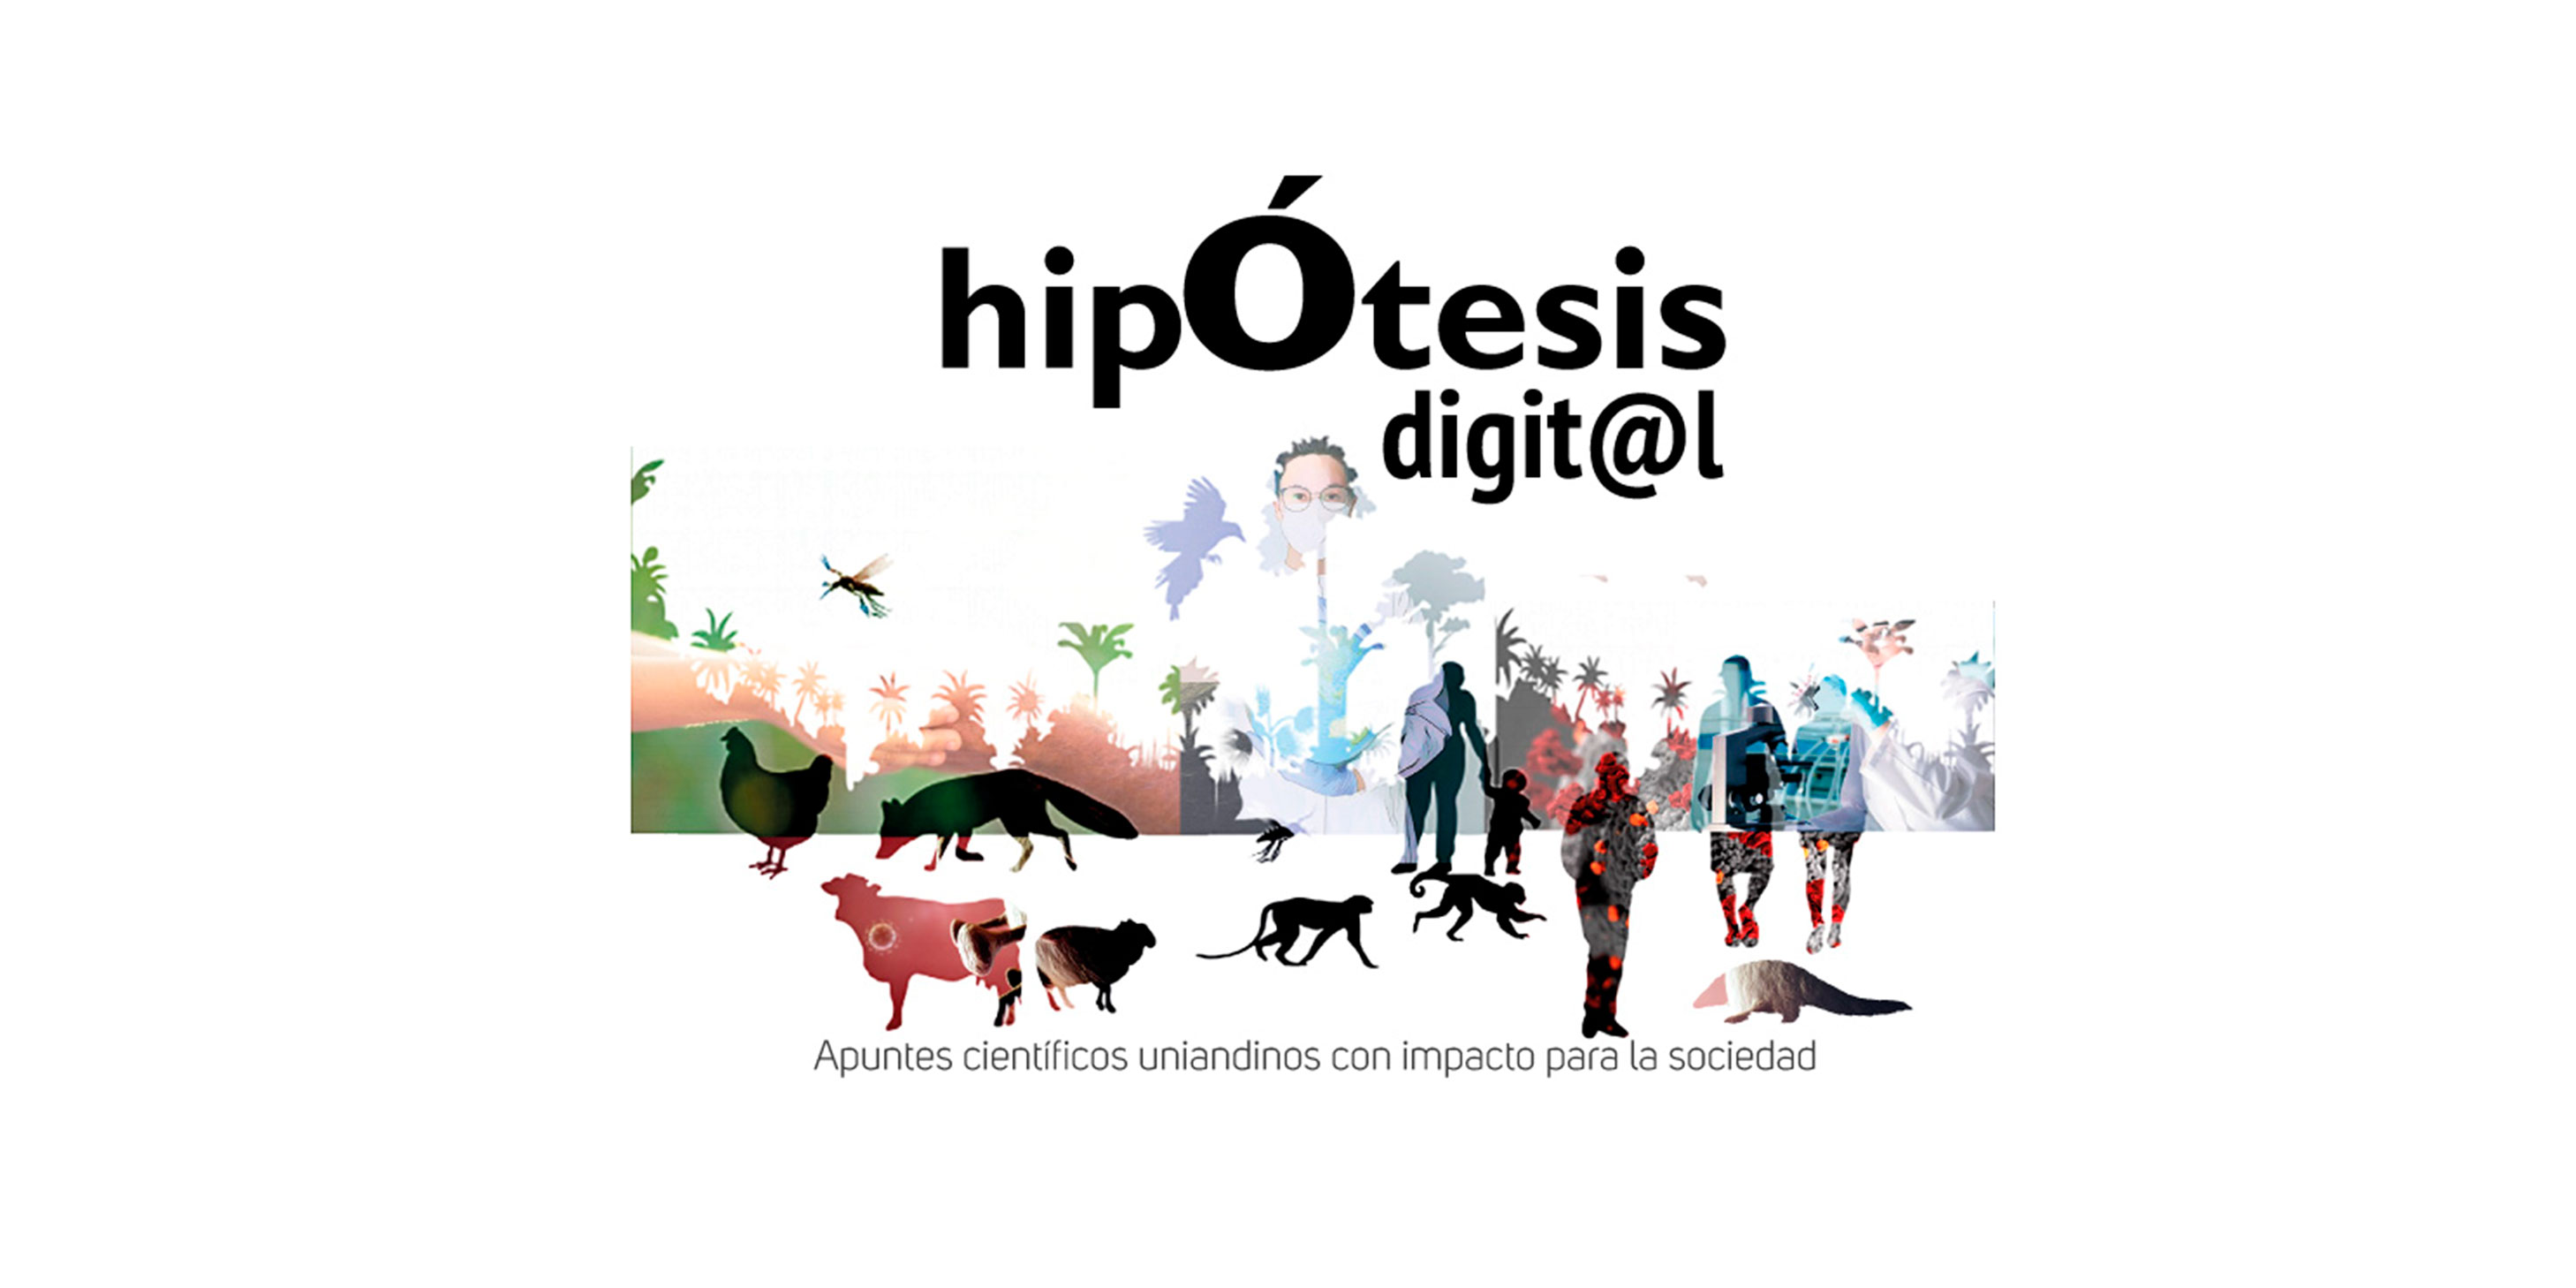 Hipótesis digital: Apuntes científicos uniandinos con impacto para la sociedad